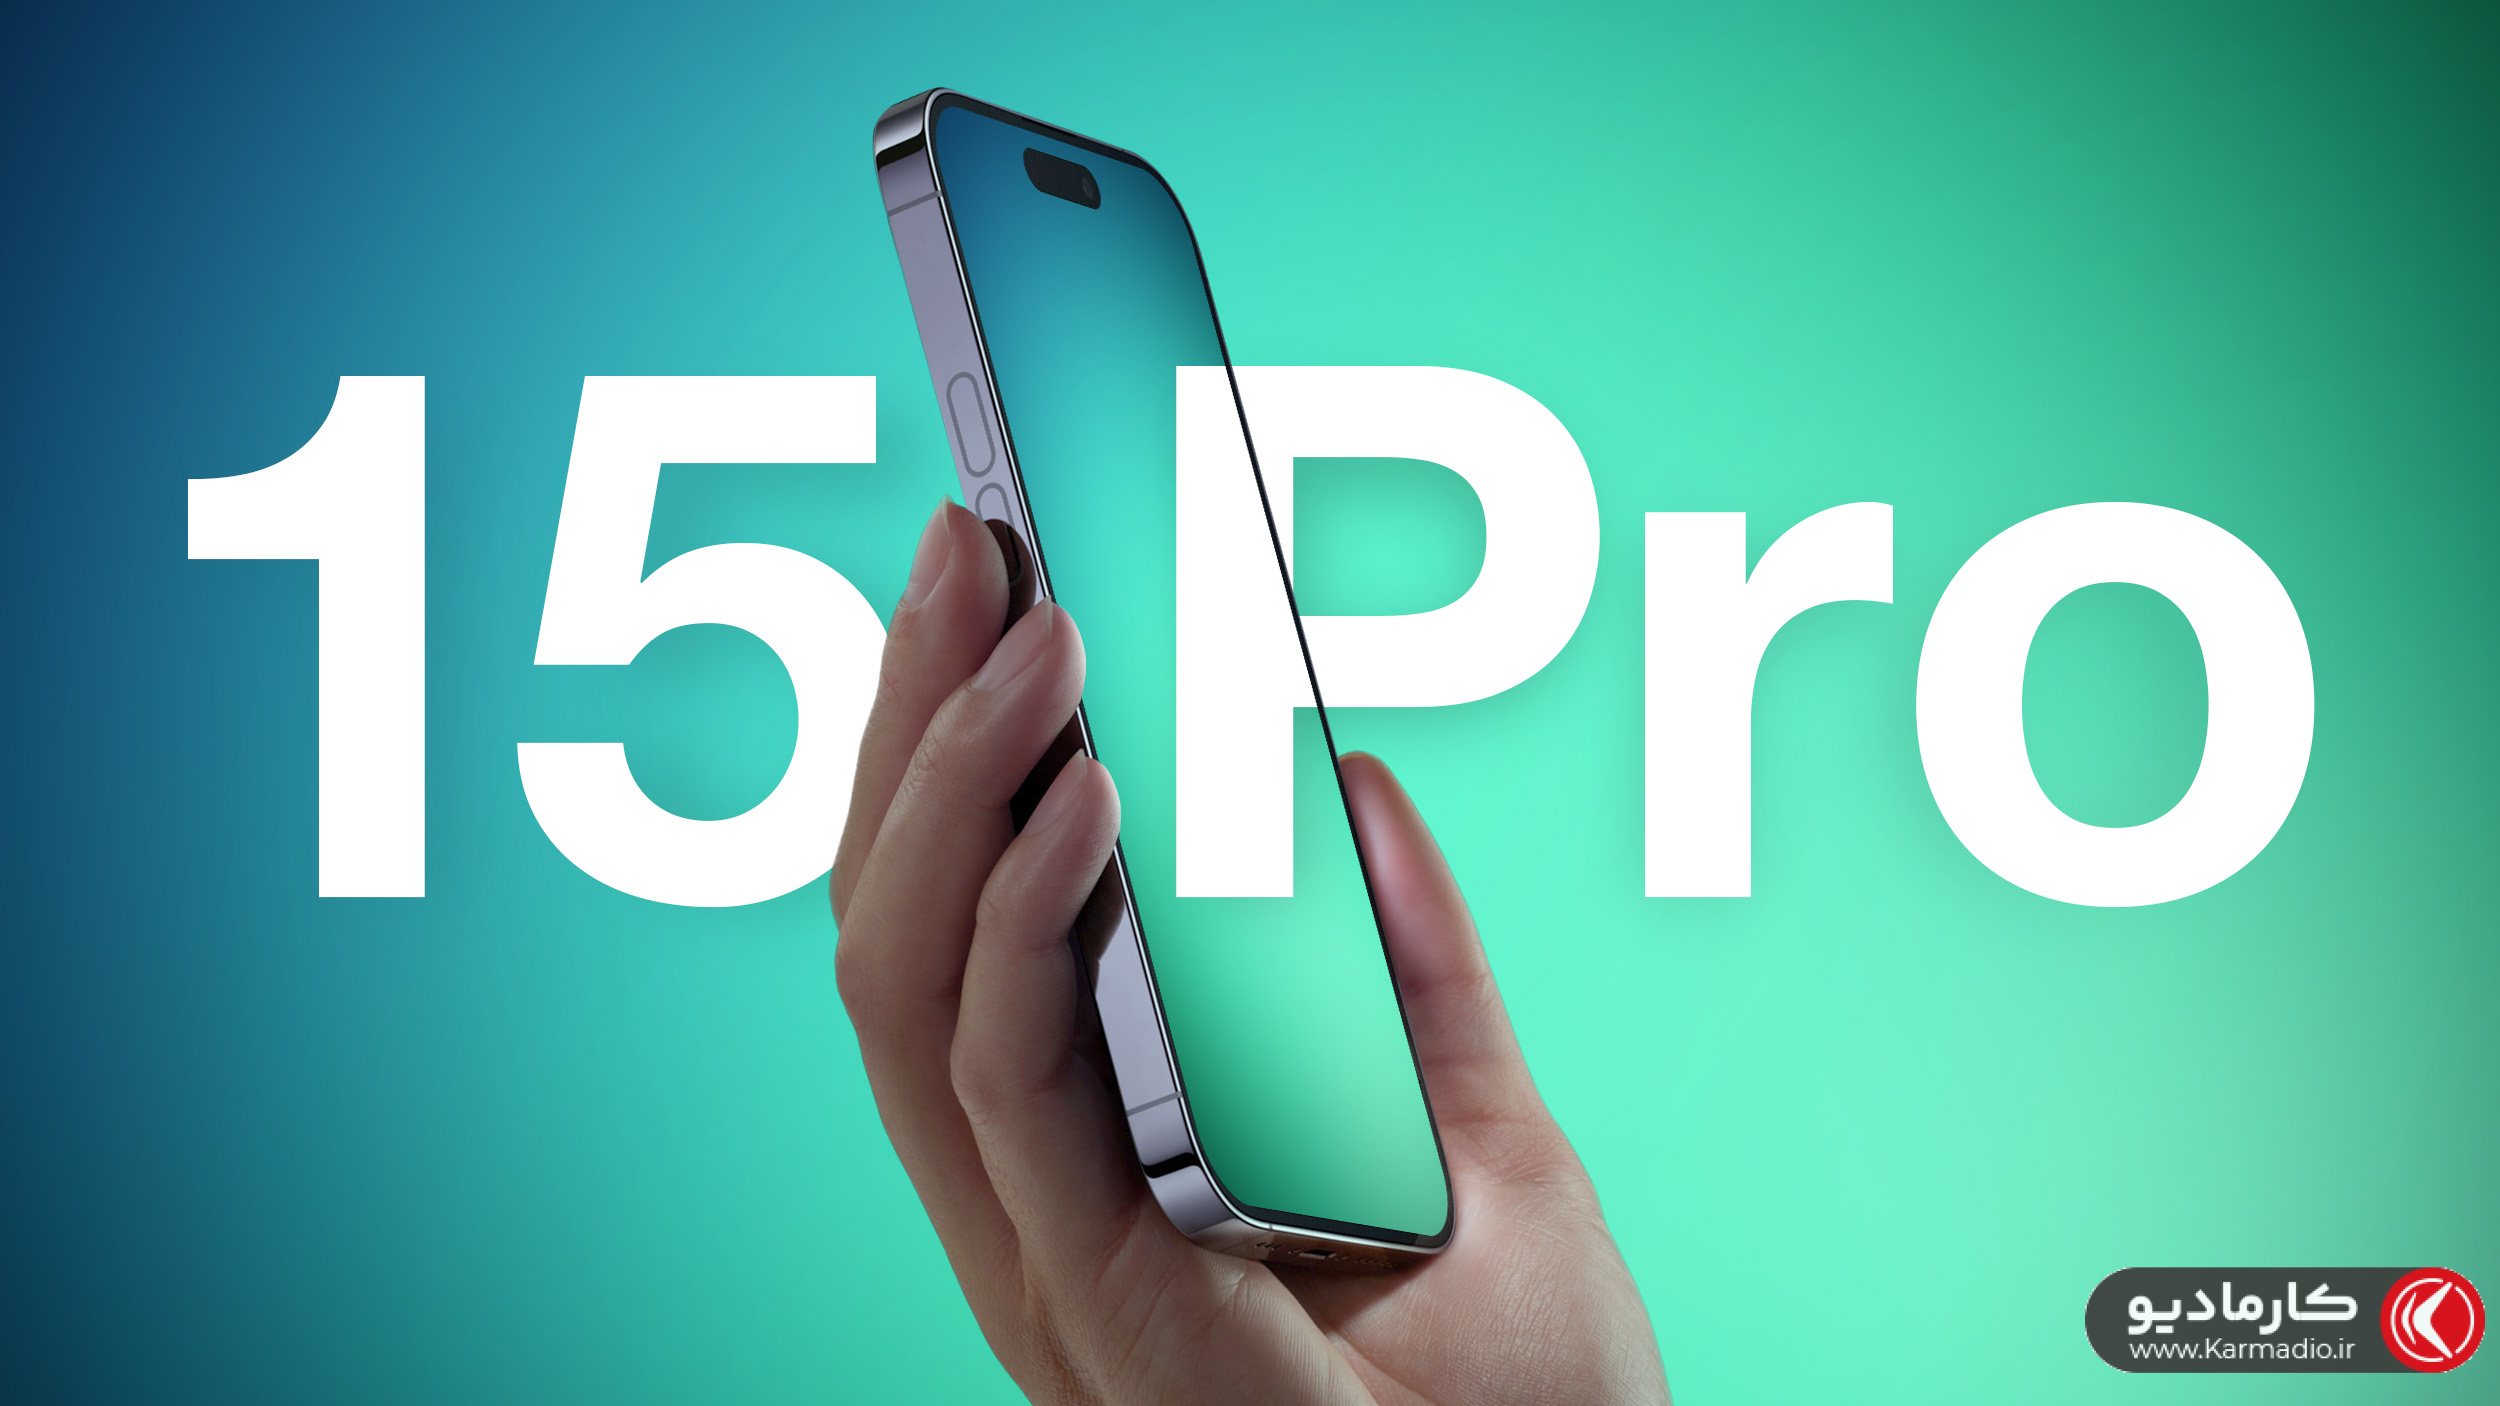  آیفون 15، آیفون پرو و iPhone Pro max معرفی شد / تصاویر + مشخصات